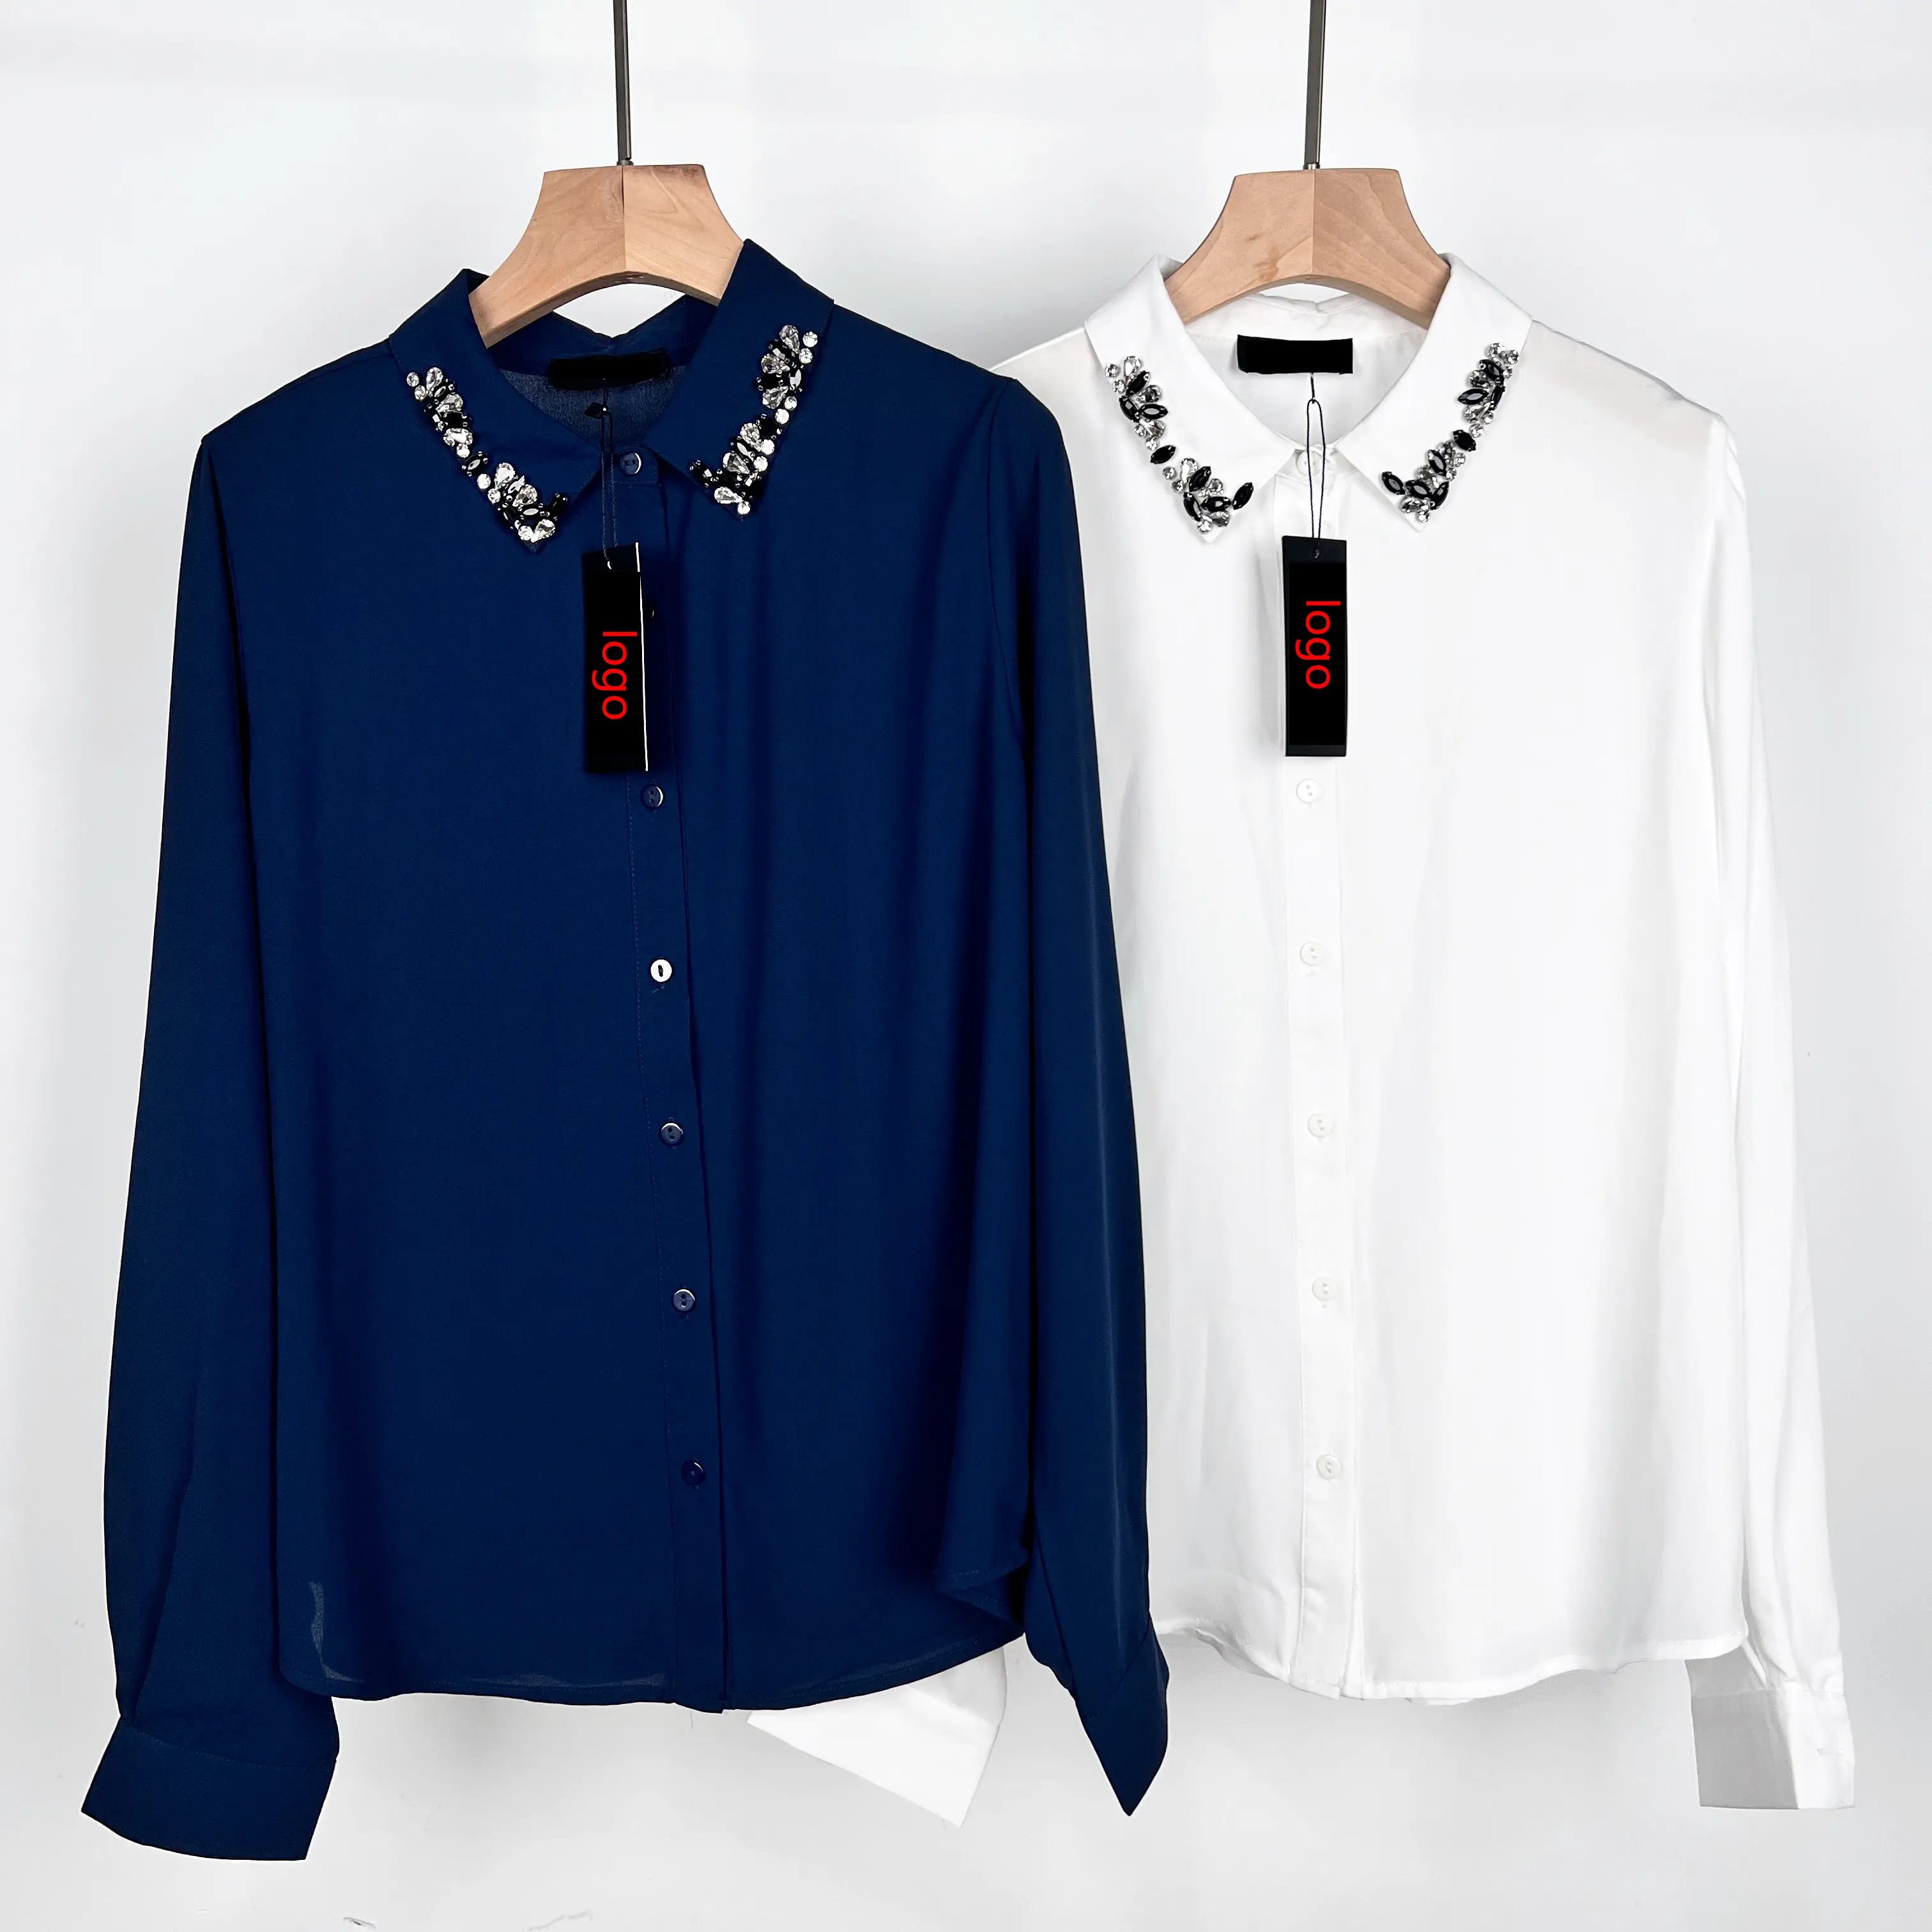 निर्माता महिलाओं के लिए लालित्य बटन अप शर्ट स्फटिक शर्ट शर्ट के लिए लंबी आस्तीन डिजाइन करते हैं